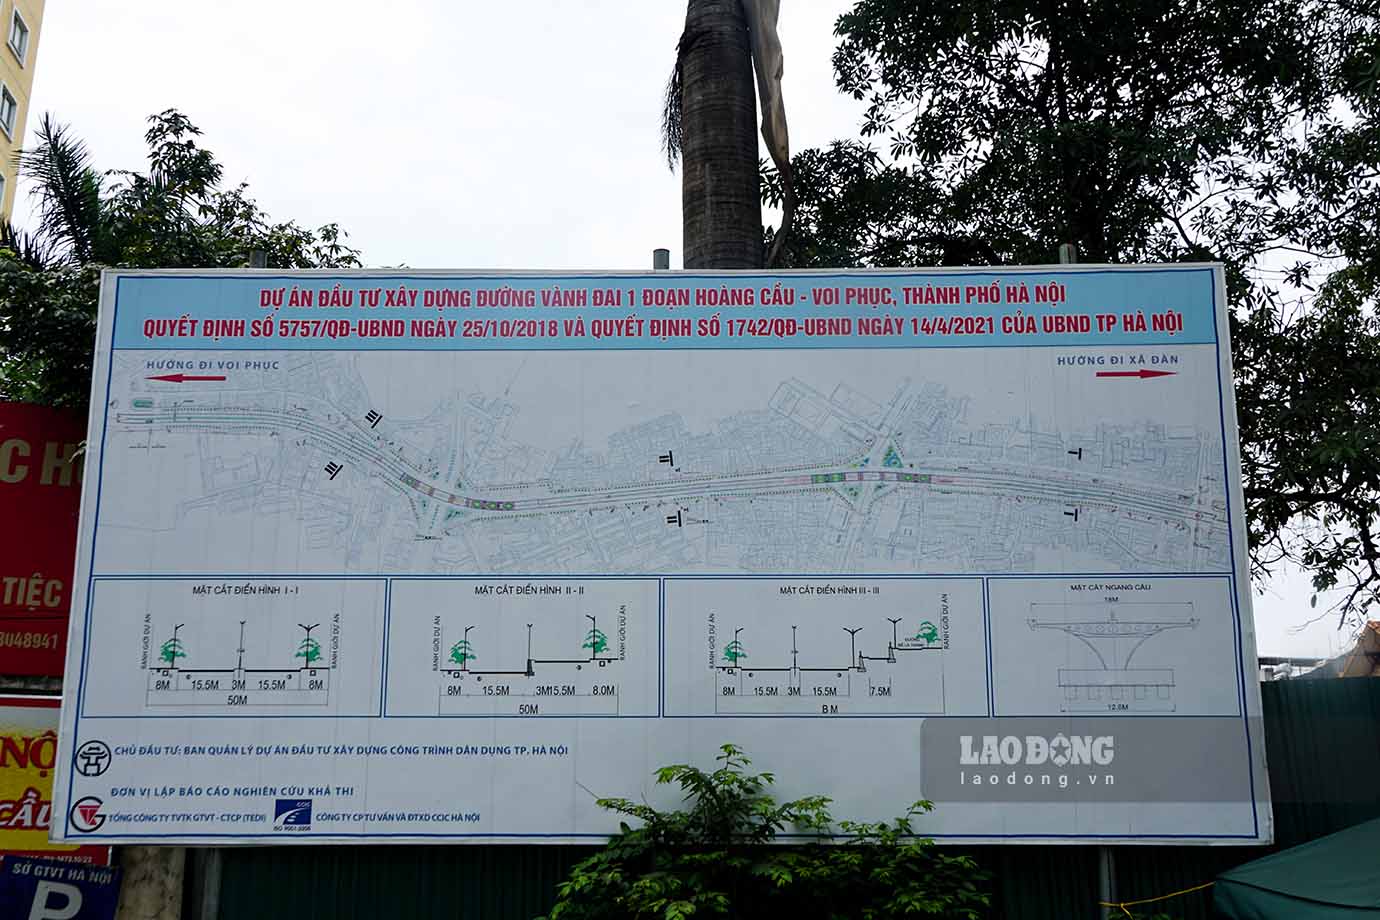 Theo báo cáo của UBND quận Đống Đa, quận đã hoàn thành điều tra, xác nhận nguồn gốc đất toàn bộ 658 trường hợp thuộc địa bàn 4 phường (Cát Linh, Láng Hạ, Láng Thượng, Ô Chợ Dừa).